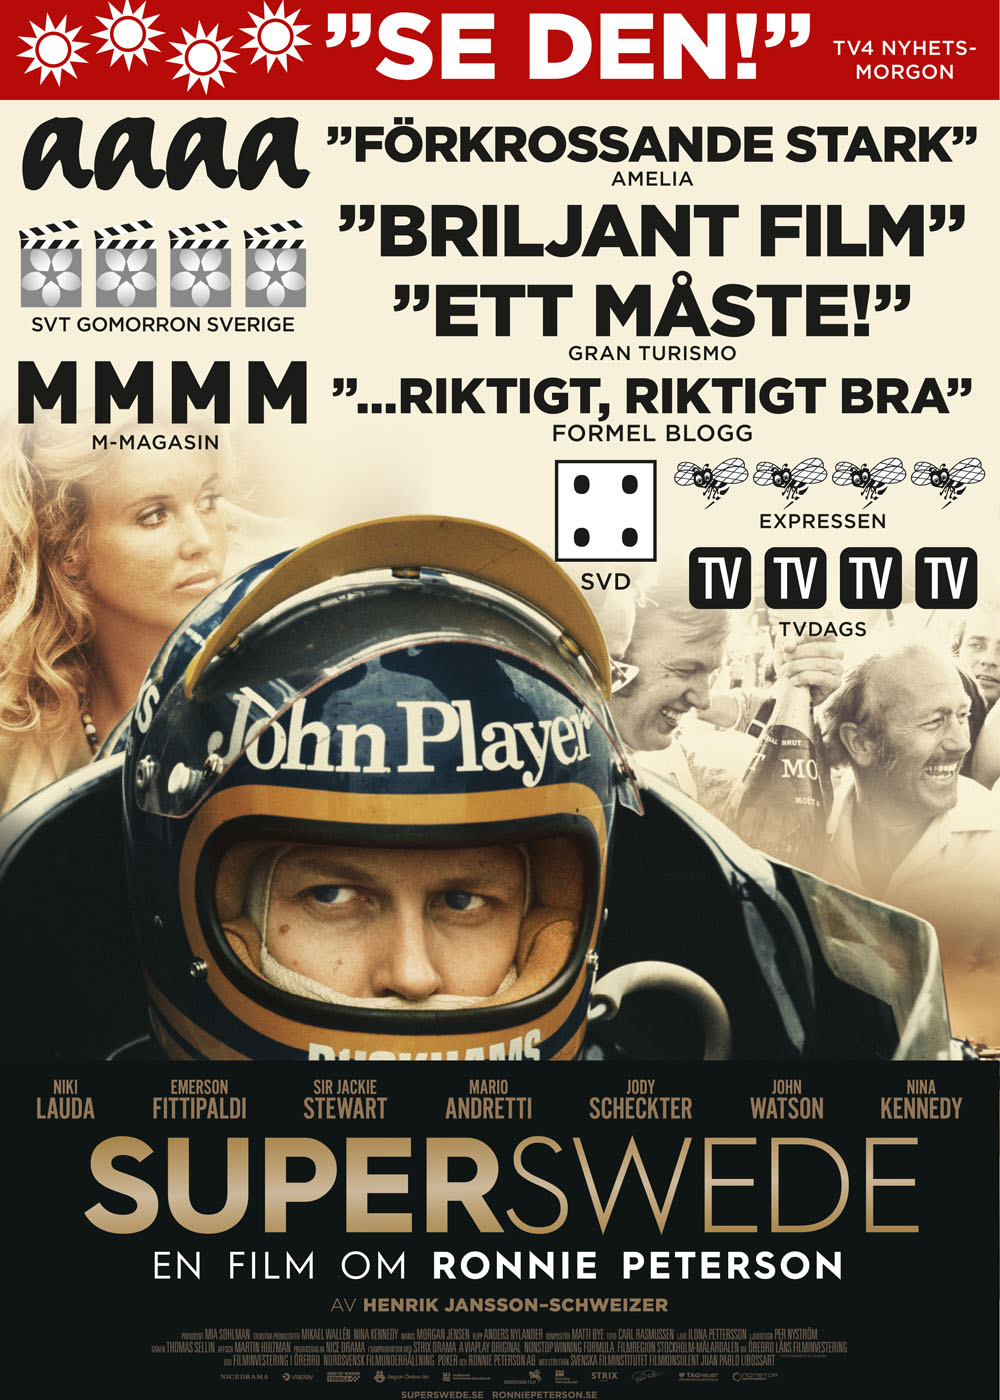 Superswede - En film om Ronnie Peterson